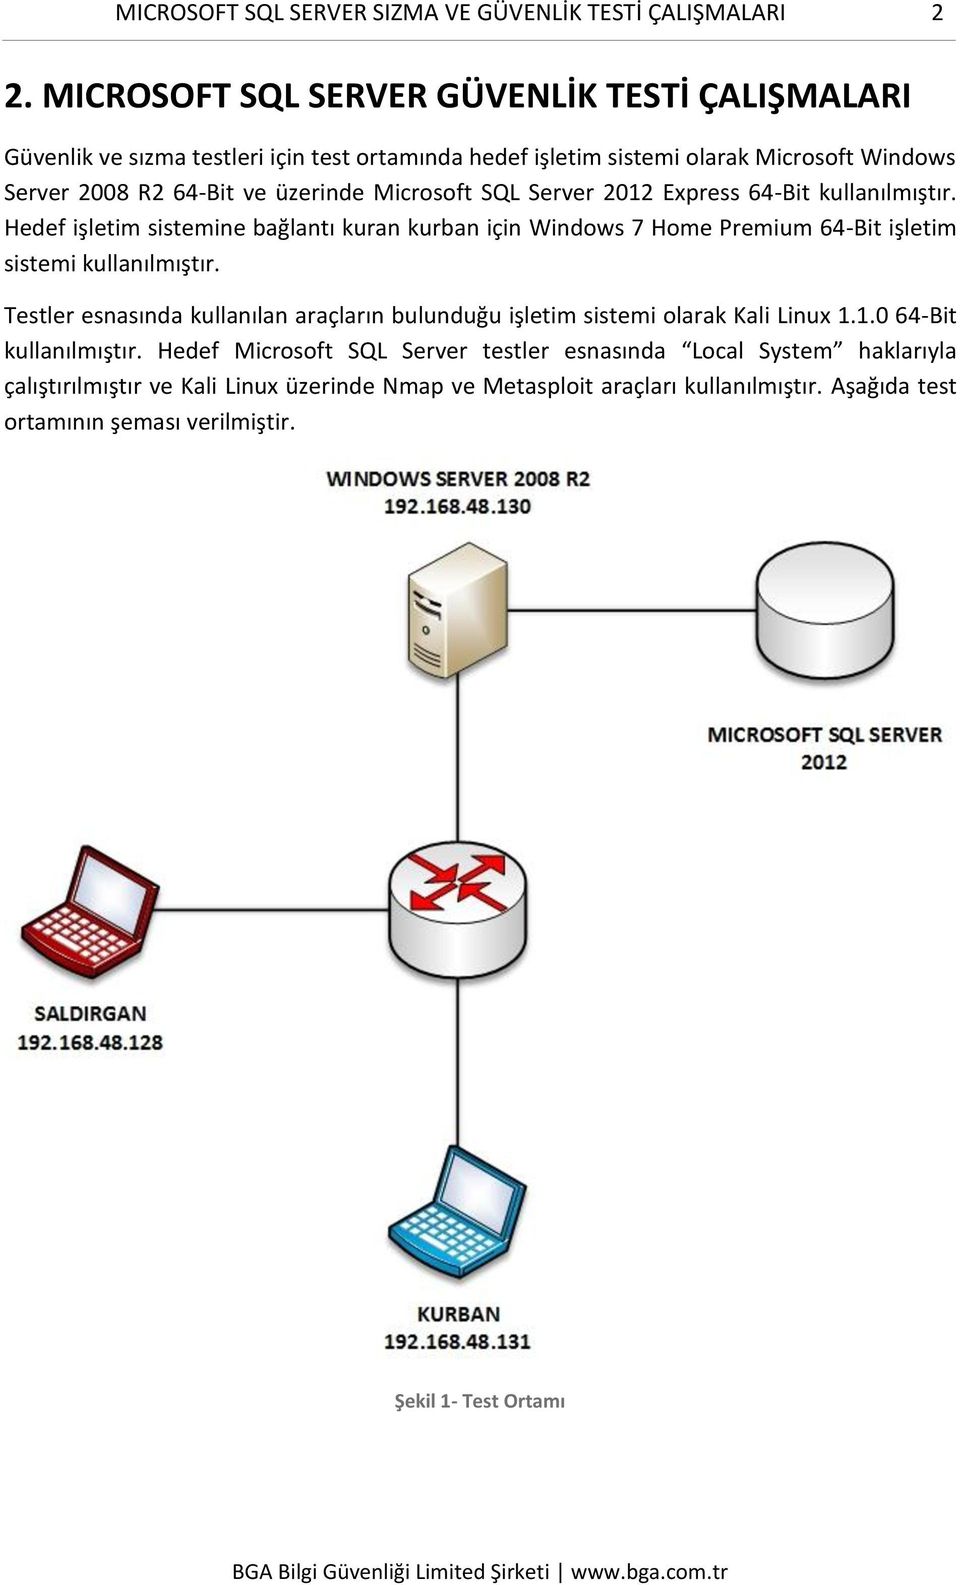 Microsoft SQL Server 2012 Express 64-Bit kullanılmıştır. Hedef işletim sistemine bağlantı kuran kurban için Windows 7 Home Premium 64-Bit işletim sistemi kullanılmıştır.